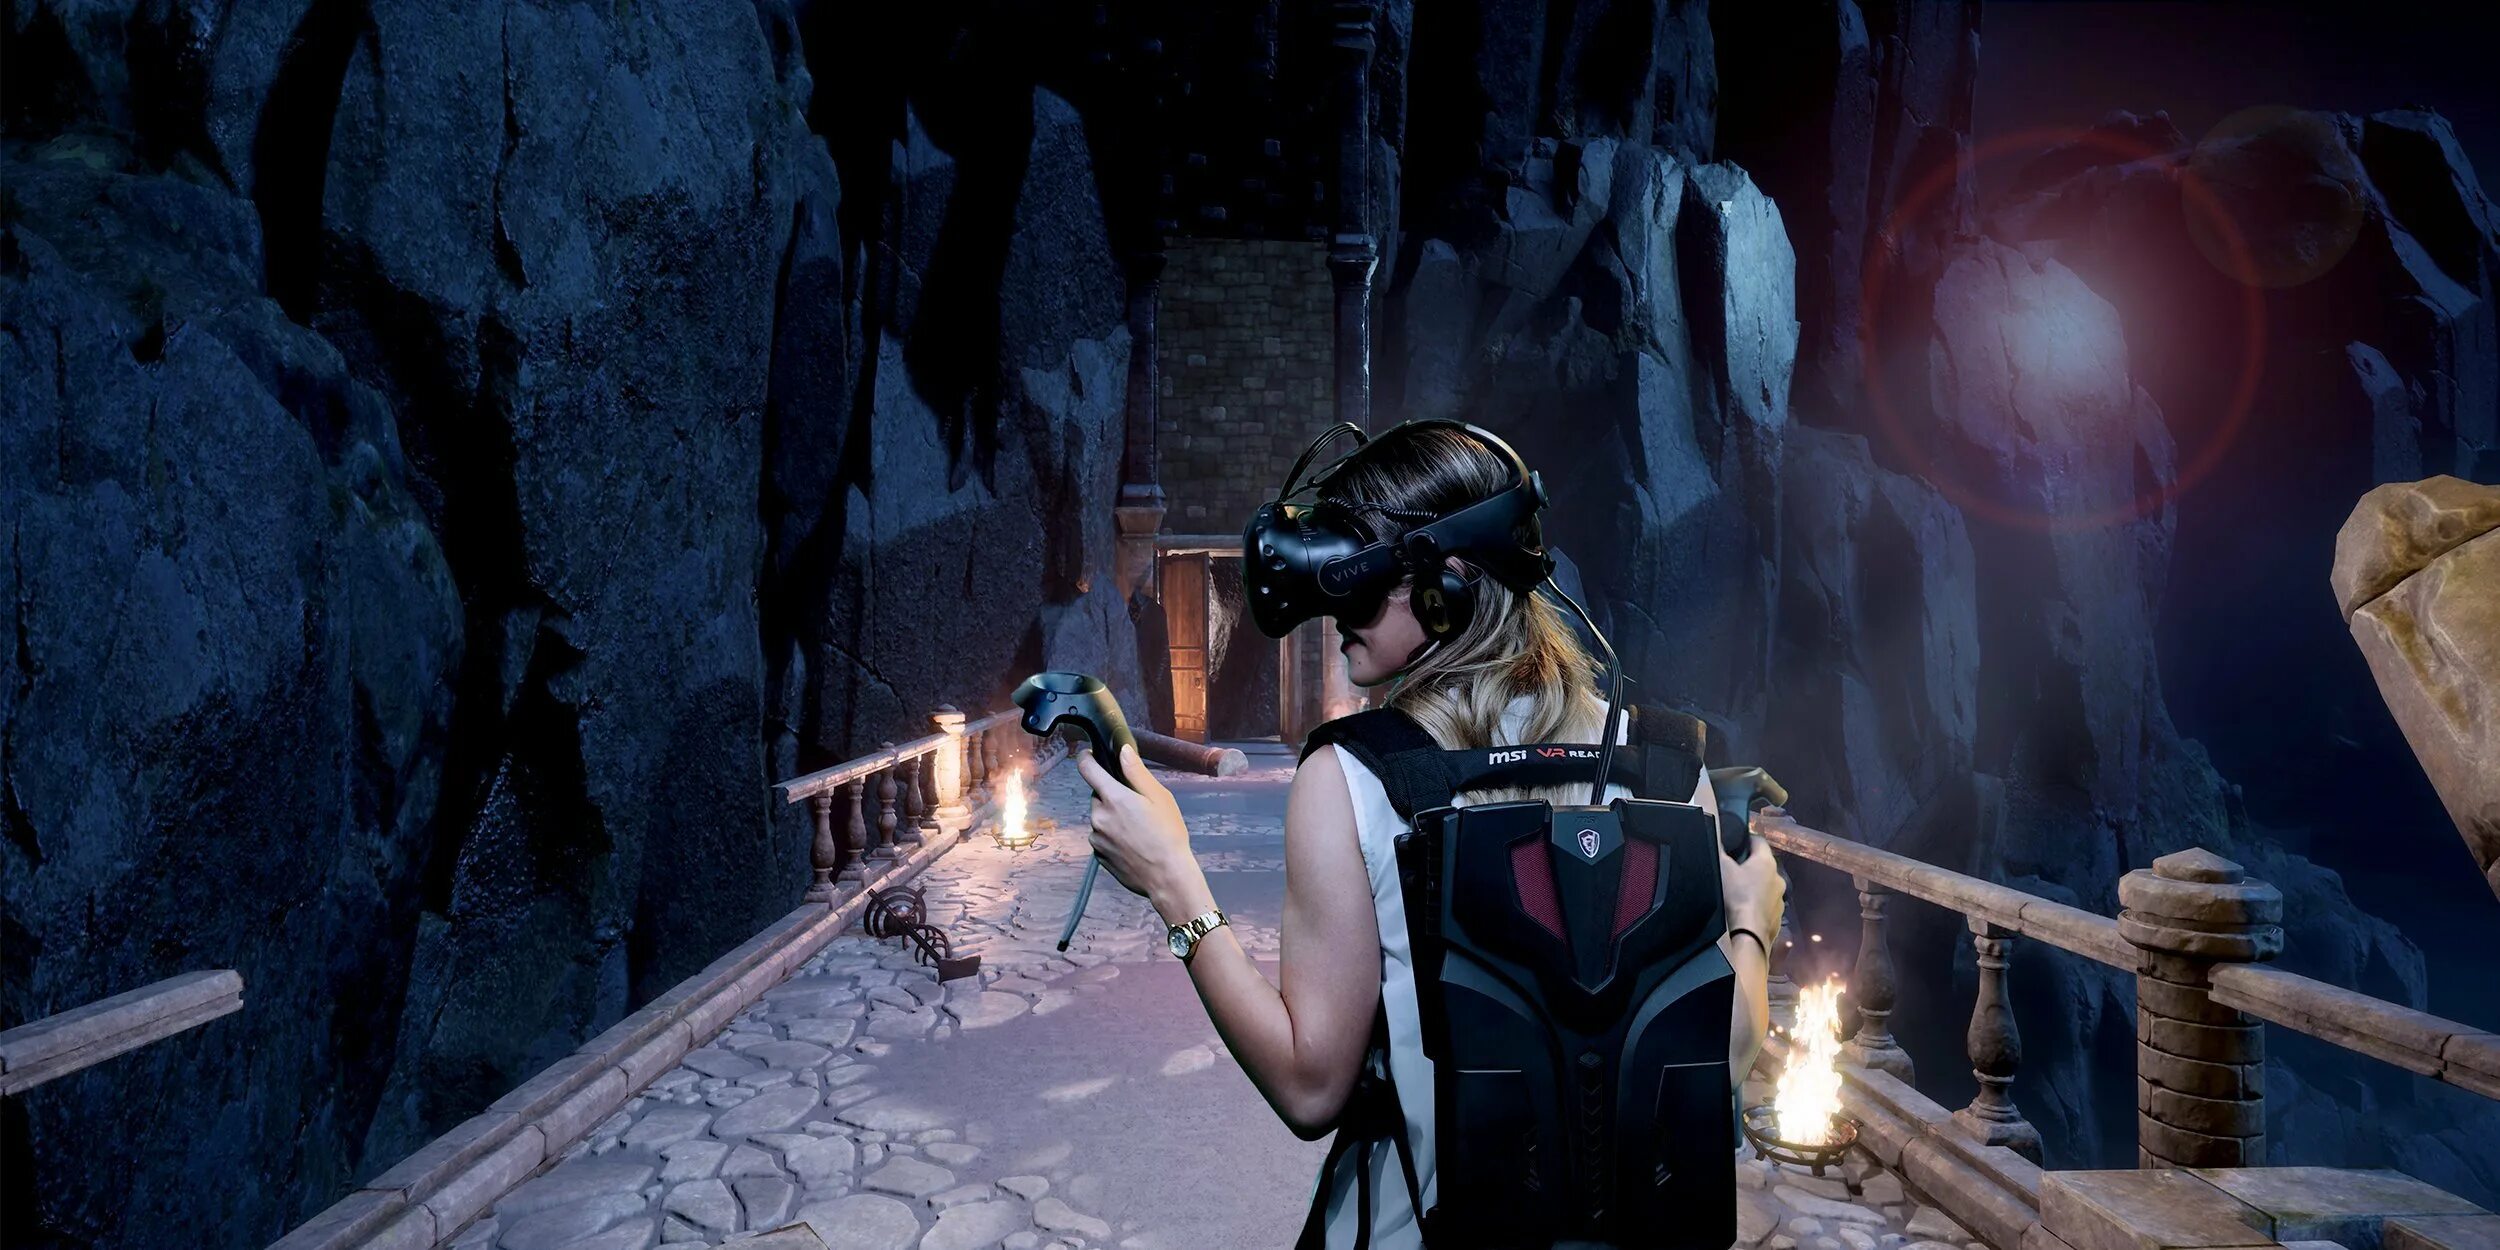 Поиграем в виртуальные игры. Oculus Quest виртуальная реальность. VR Oculus Quest 2. VR Arena игра. Virtual Virtual reality VR Oculus Quest 2 игра.